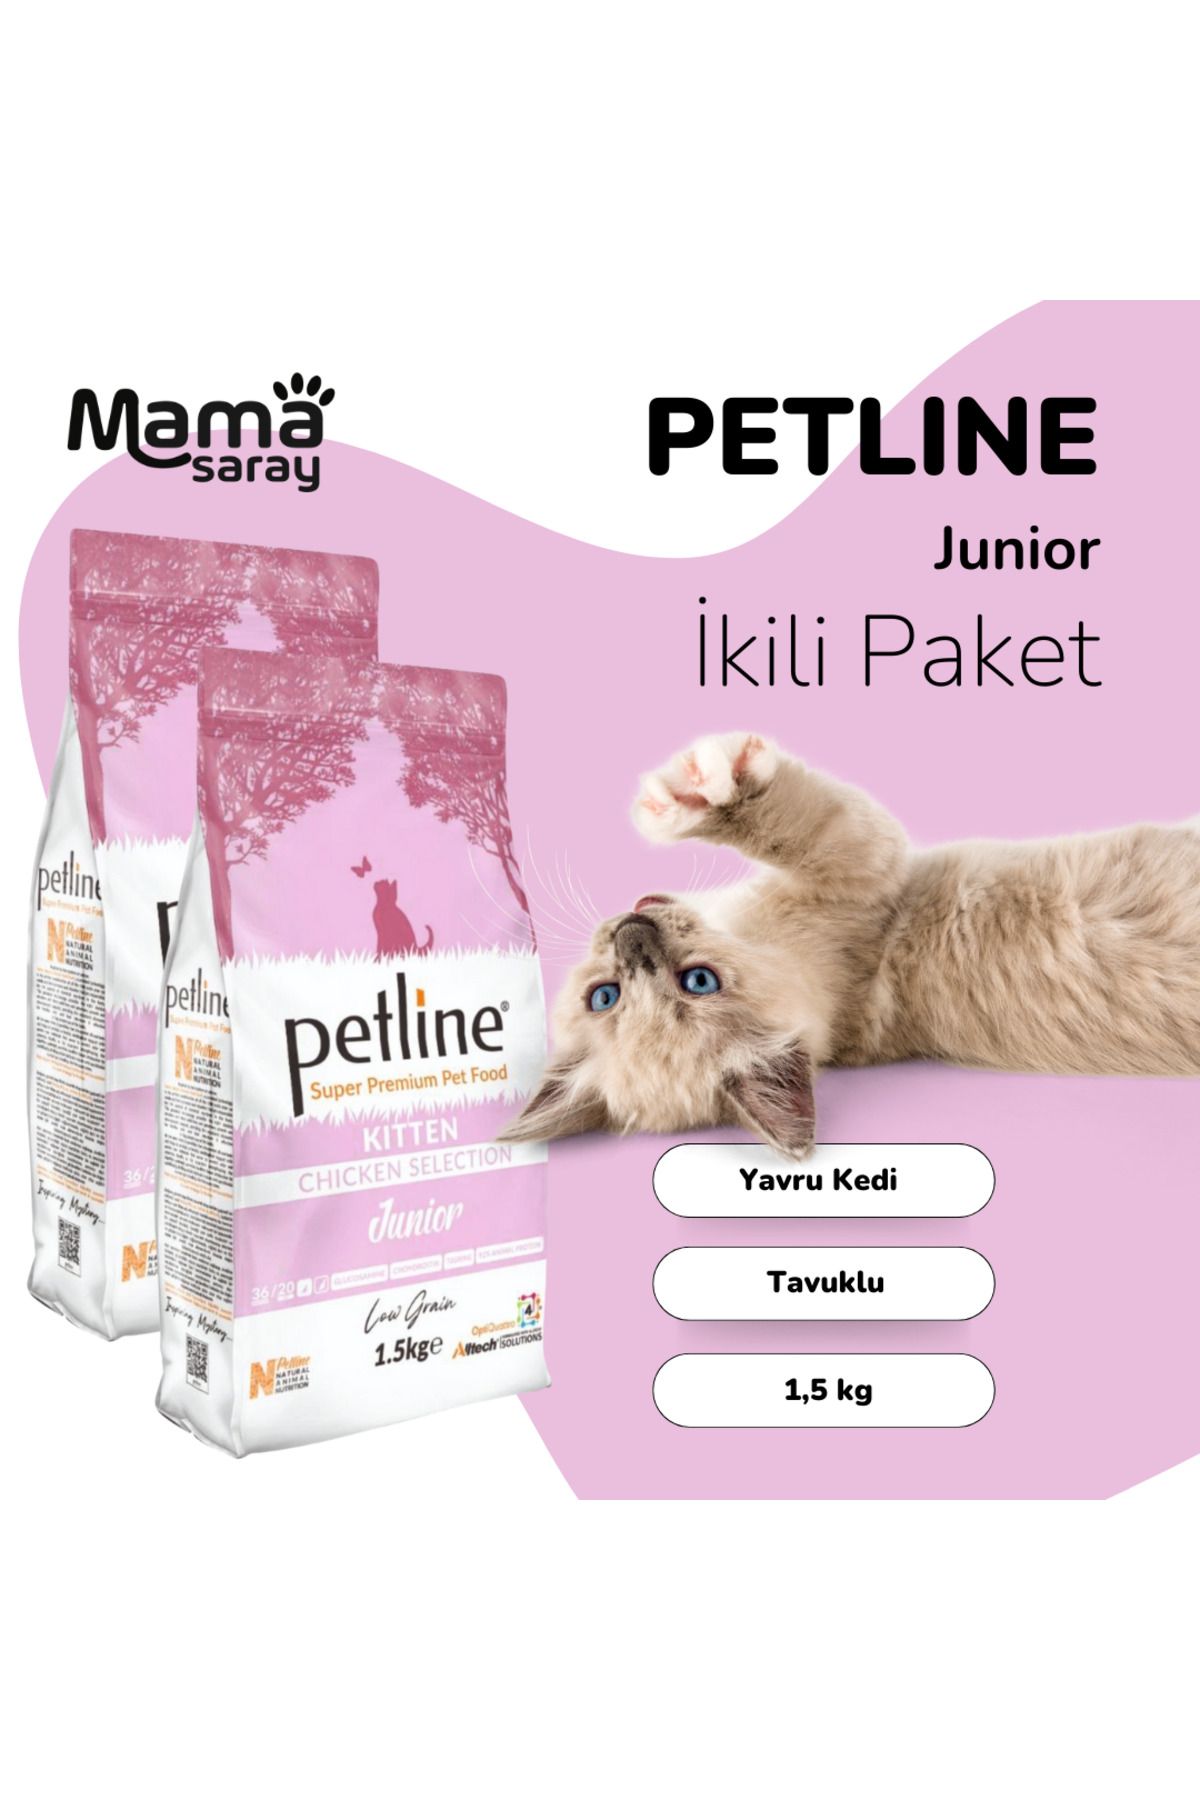 Petline S. P. Yavru Kedi Maması Kitten Tavuklu 1.5 Kg (junior) Ikili Paket